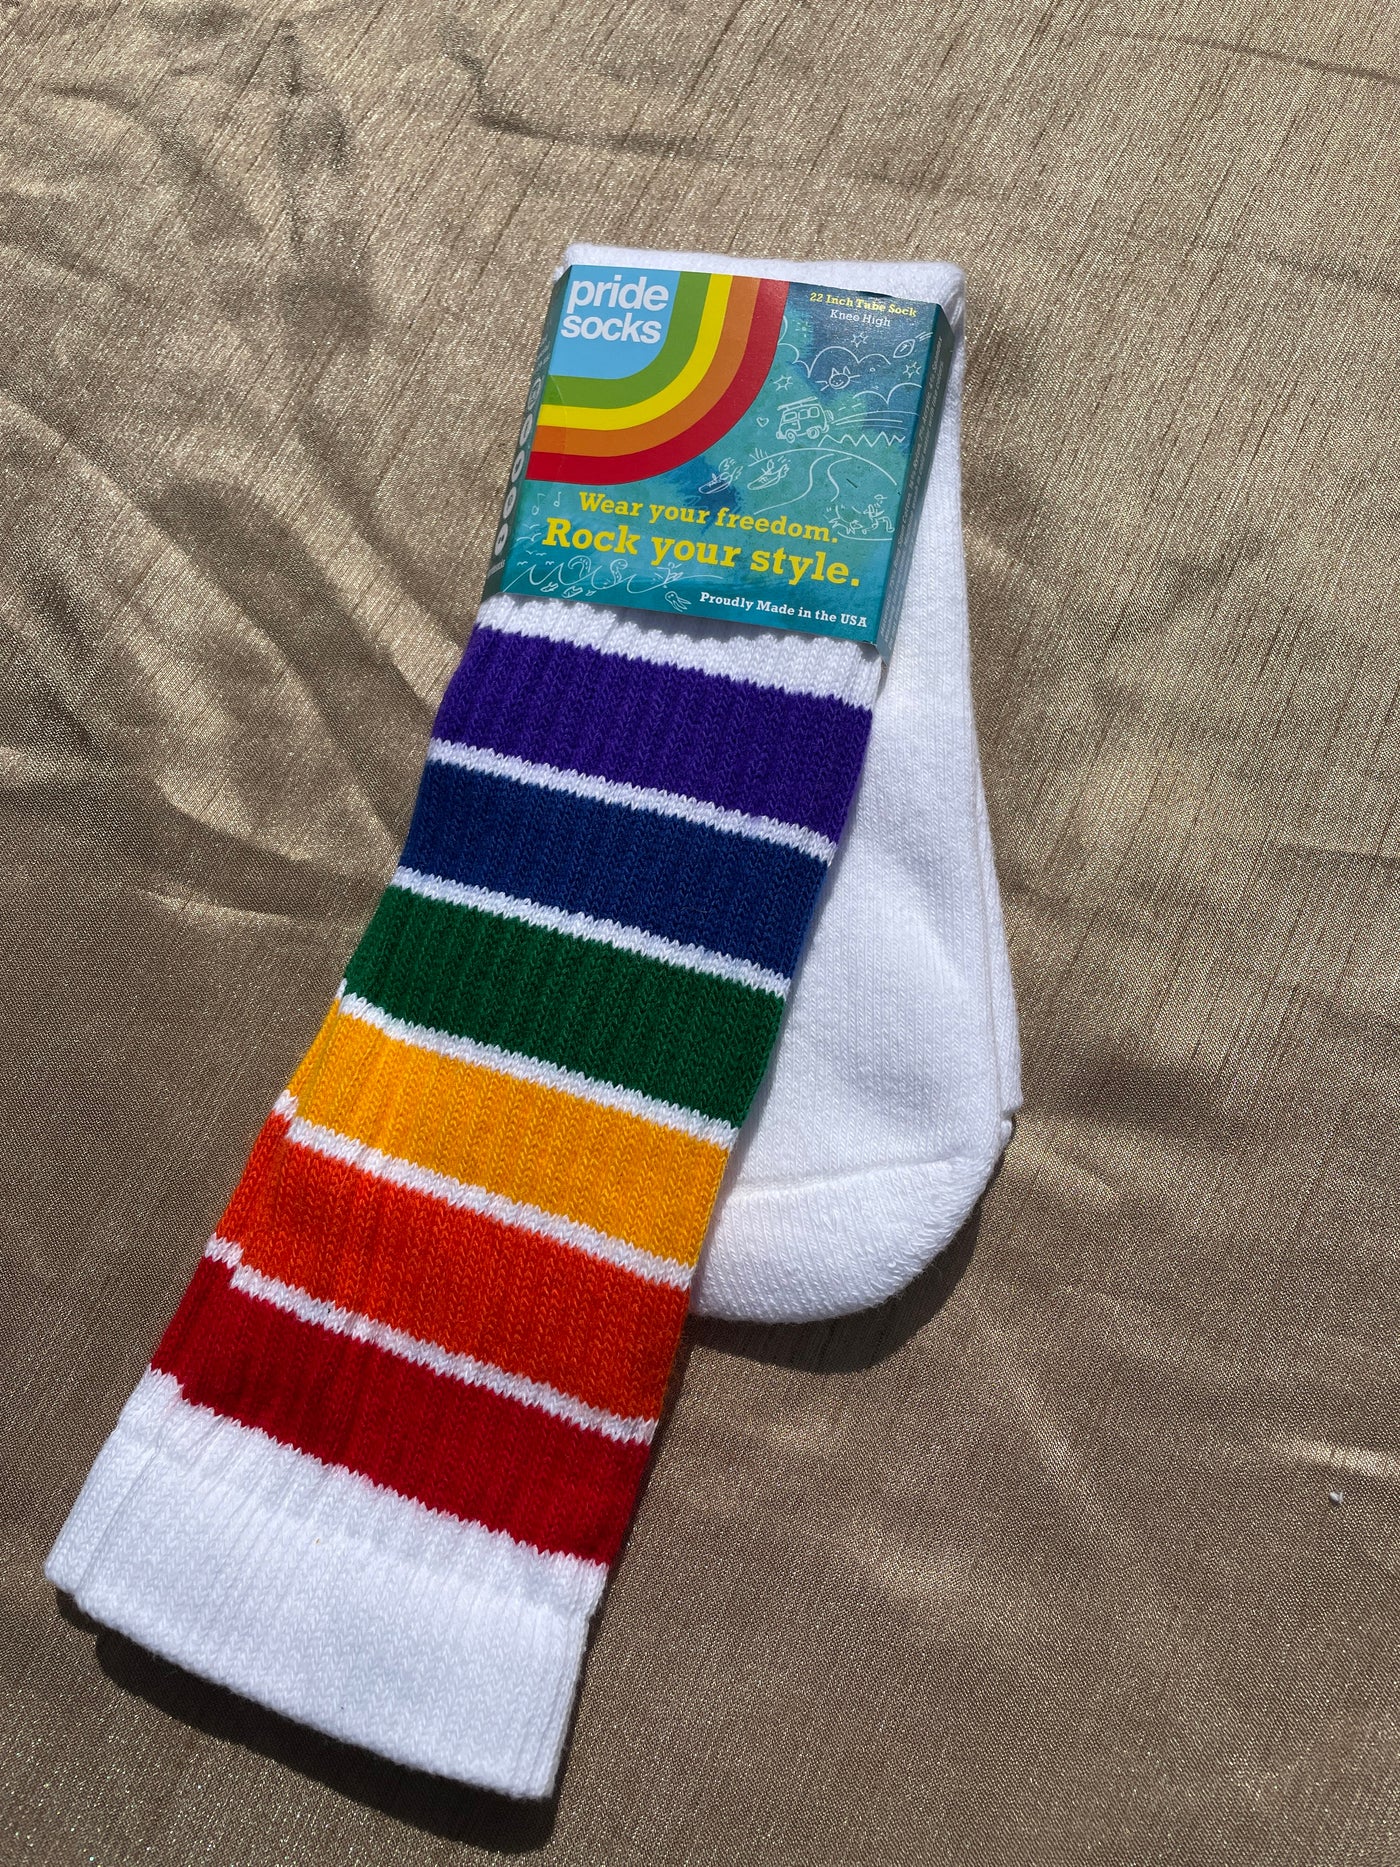 YOLO Rainbow Pride Socks Knee High Tube Socks - 22"